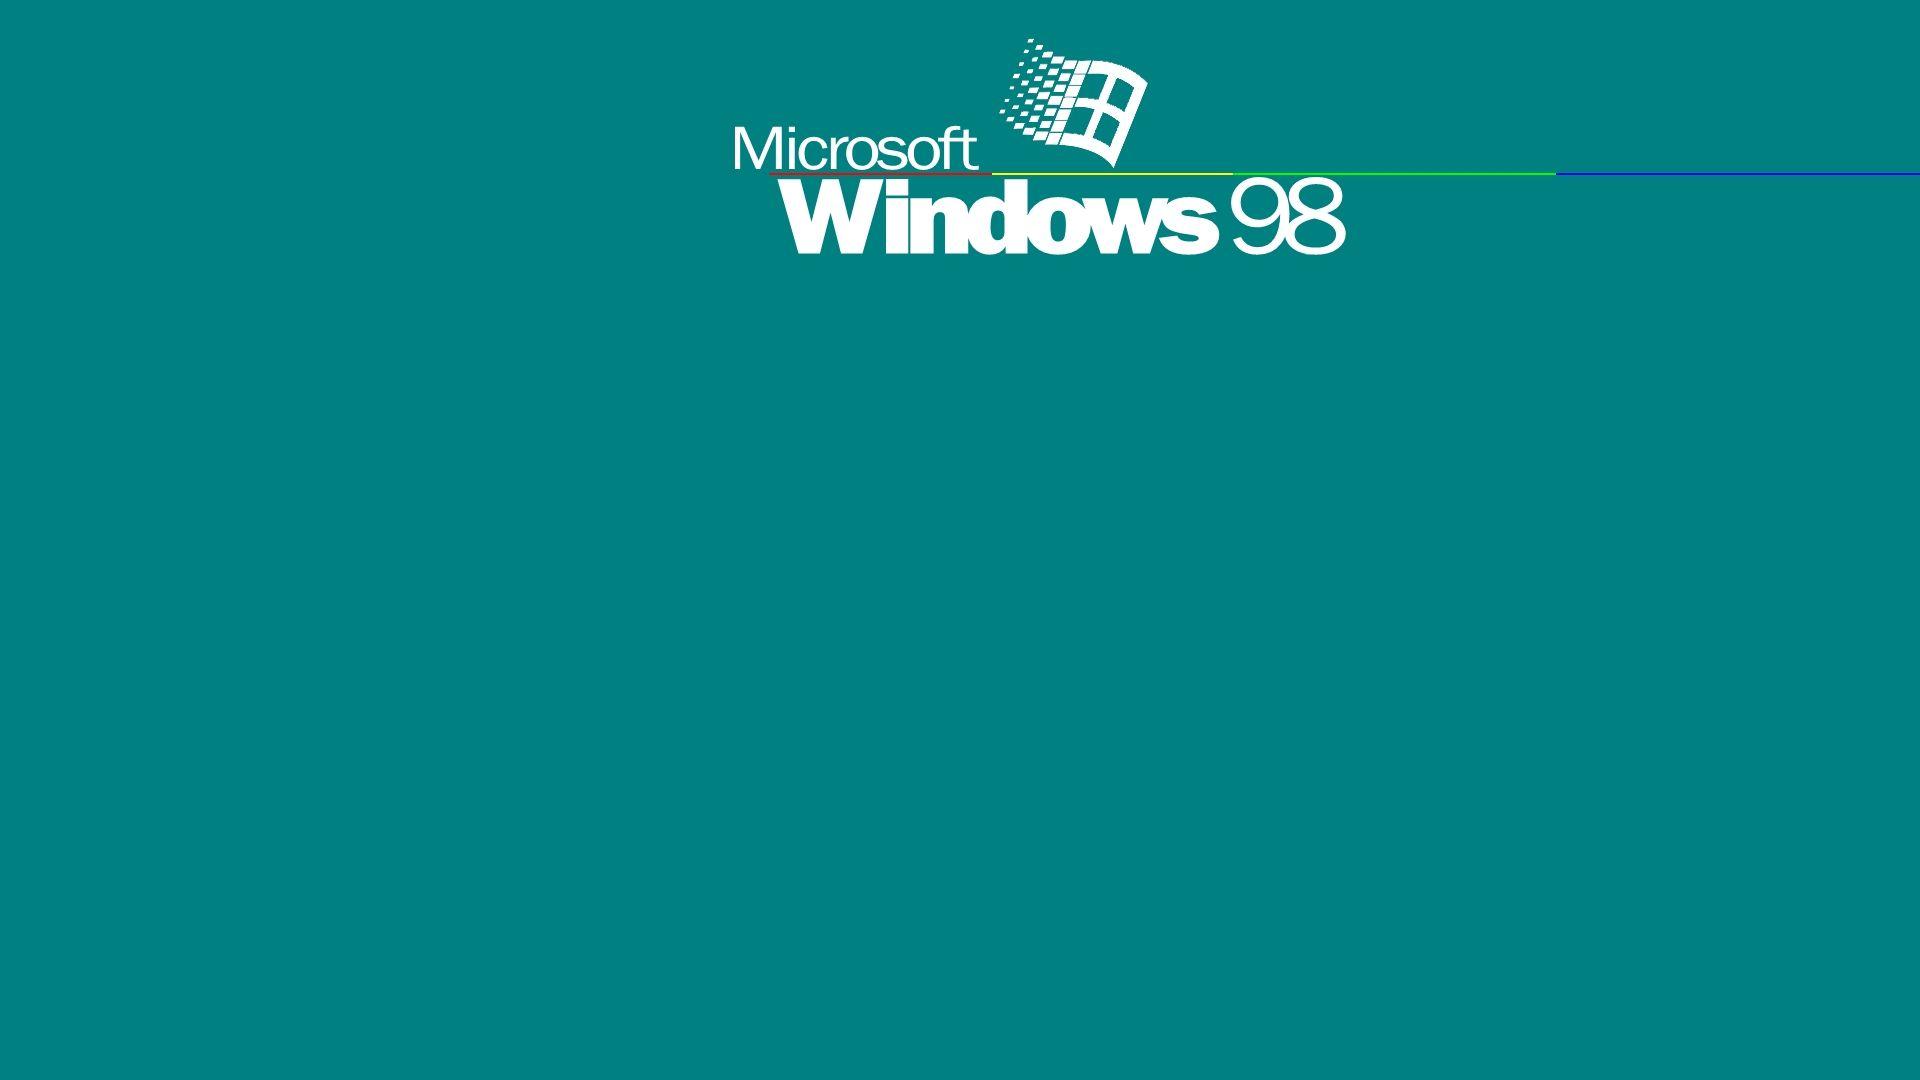 Phong cách Windows 98 Backgrounds đơn giản và vô cùng quen thuộc. Hình ảnh liên quan sẽ mang lại cho người xem cảm giác như trở về quá khứ, tận hưởng các ký ức đáng nhớ với phong cách trang trí dễ thương.